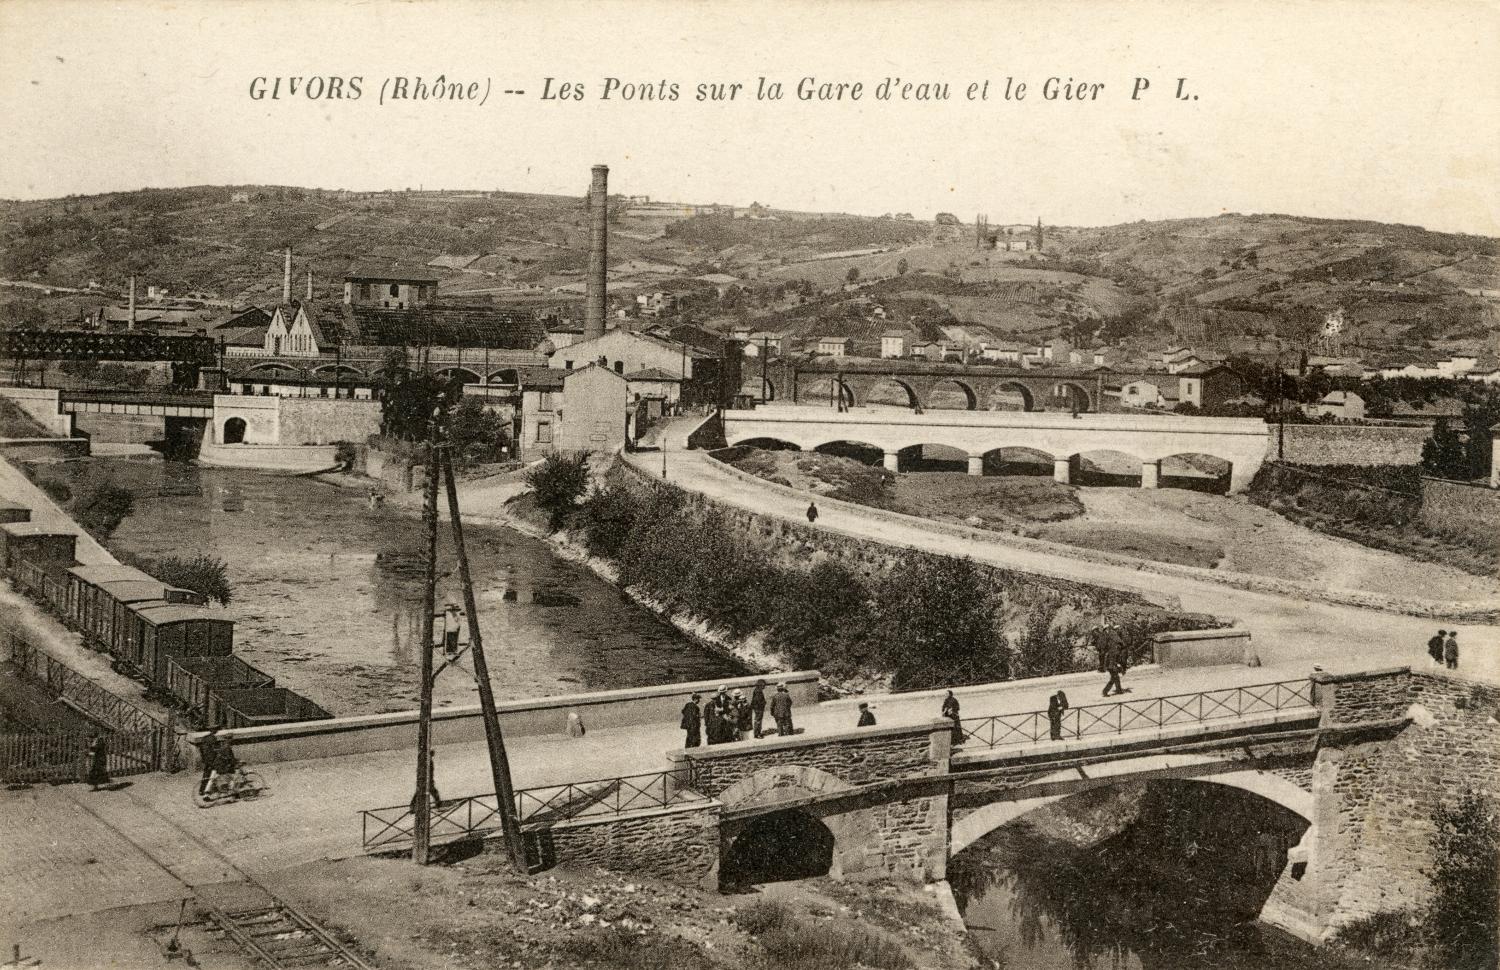 Givors (Rhône). - Les Ponts sur la gare d'eau et le Gier